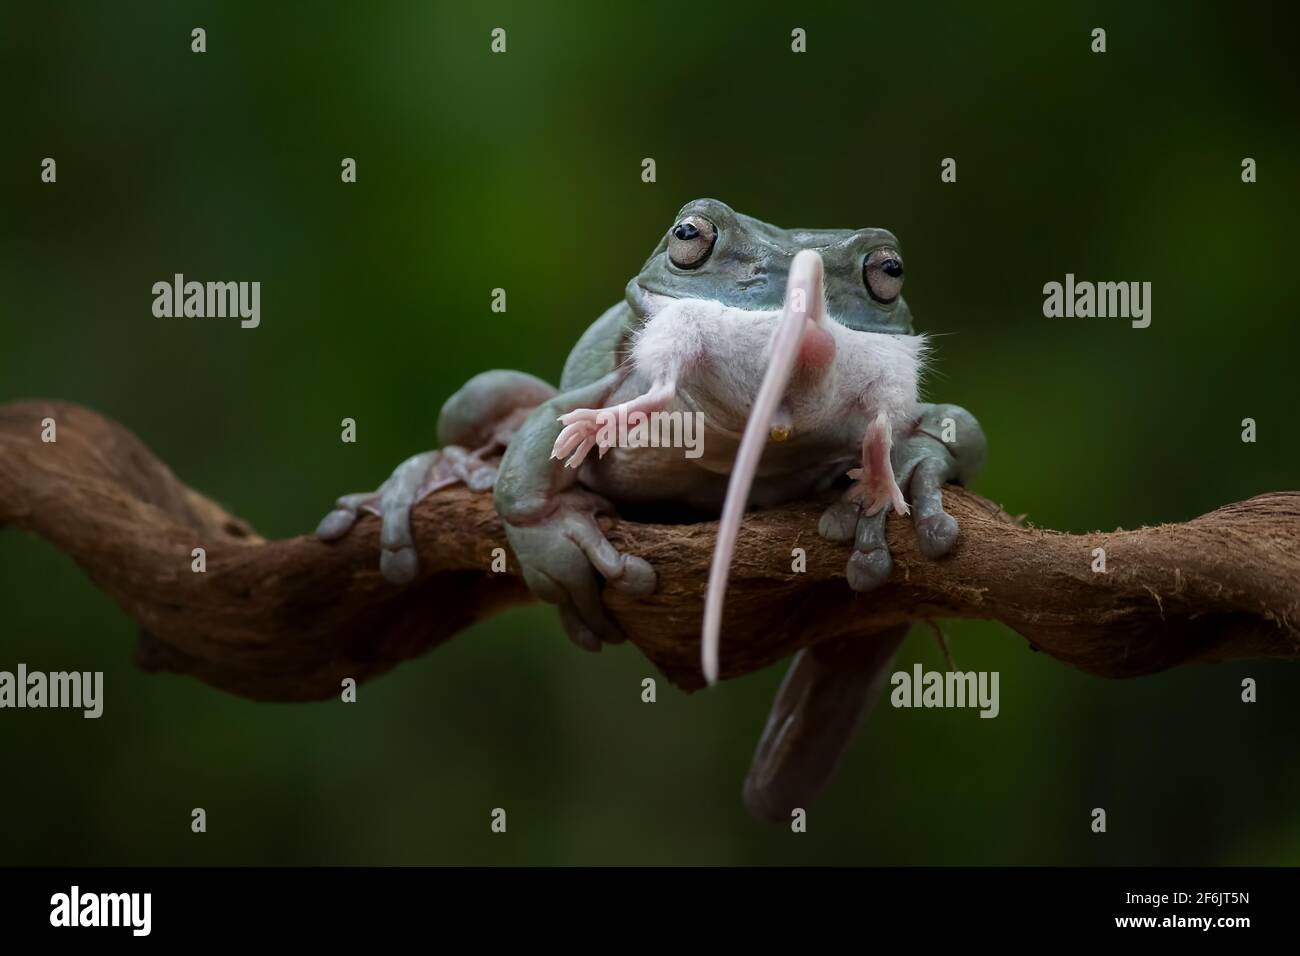 Die Maus ist nur einen Zentimeter kleiner als der Frosch. BEKSAI,  INDONESIEN: SCHOCKIERENDE Bilder zeigten den Moment, in dem ein drei-Zoll- Frosch eine zwei-Zoll-Maus WH verschluckte Stockfotografie - Alamy